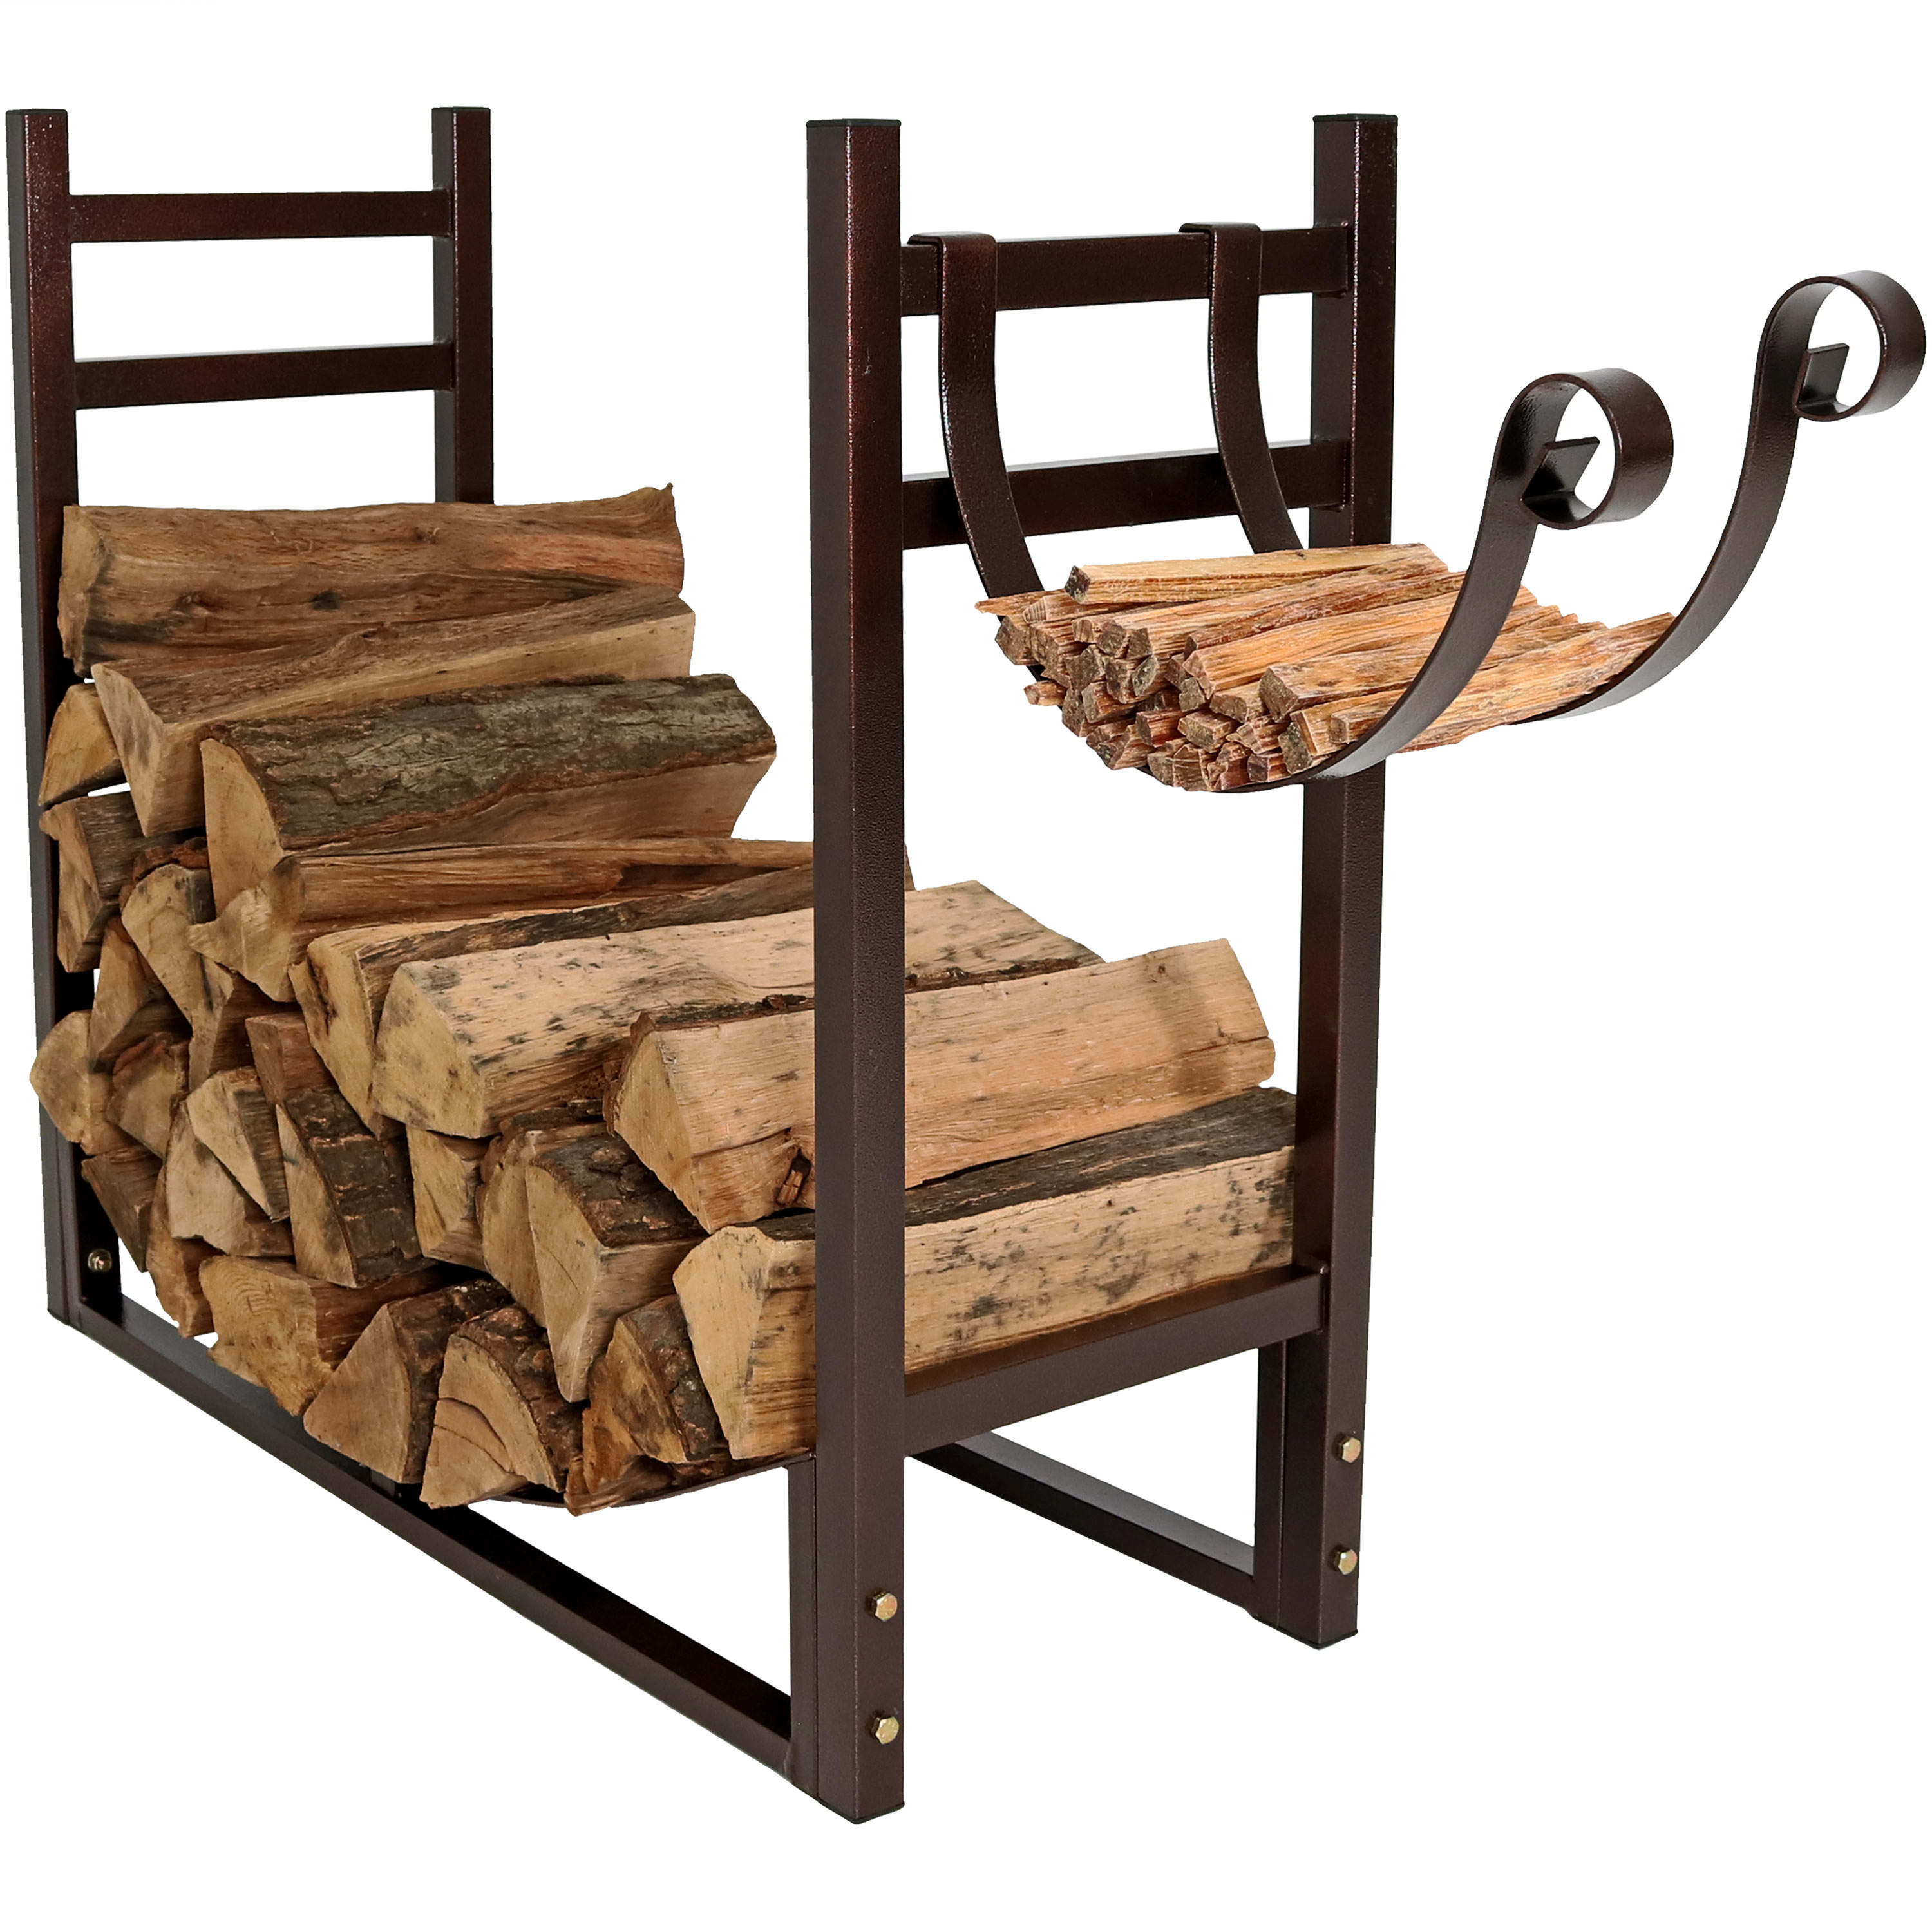 Sunnydaze Log Rack and Kindling Holder 30" Steel with Bronze Finish Wood Storage 